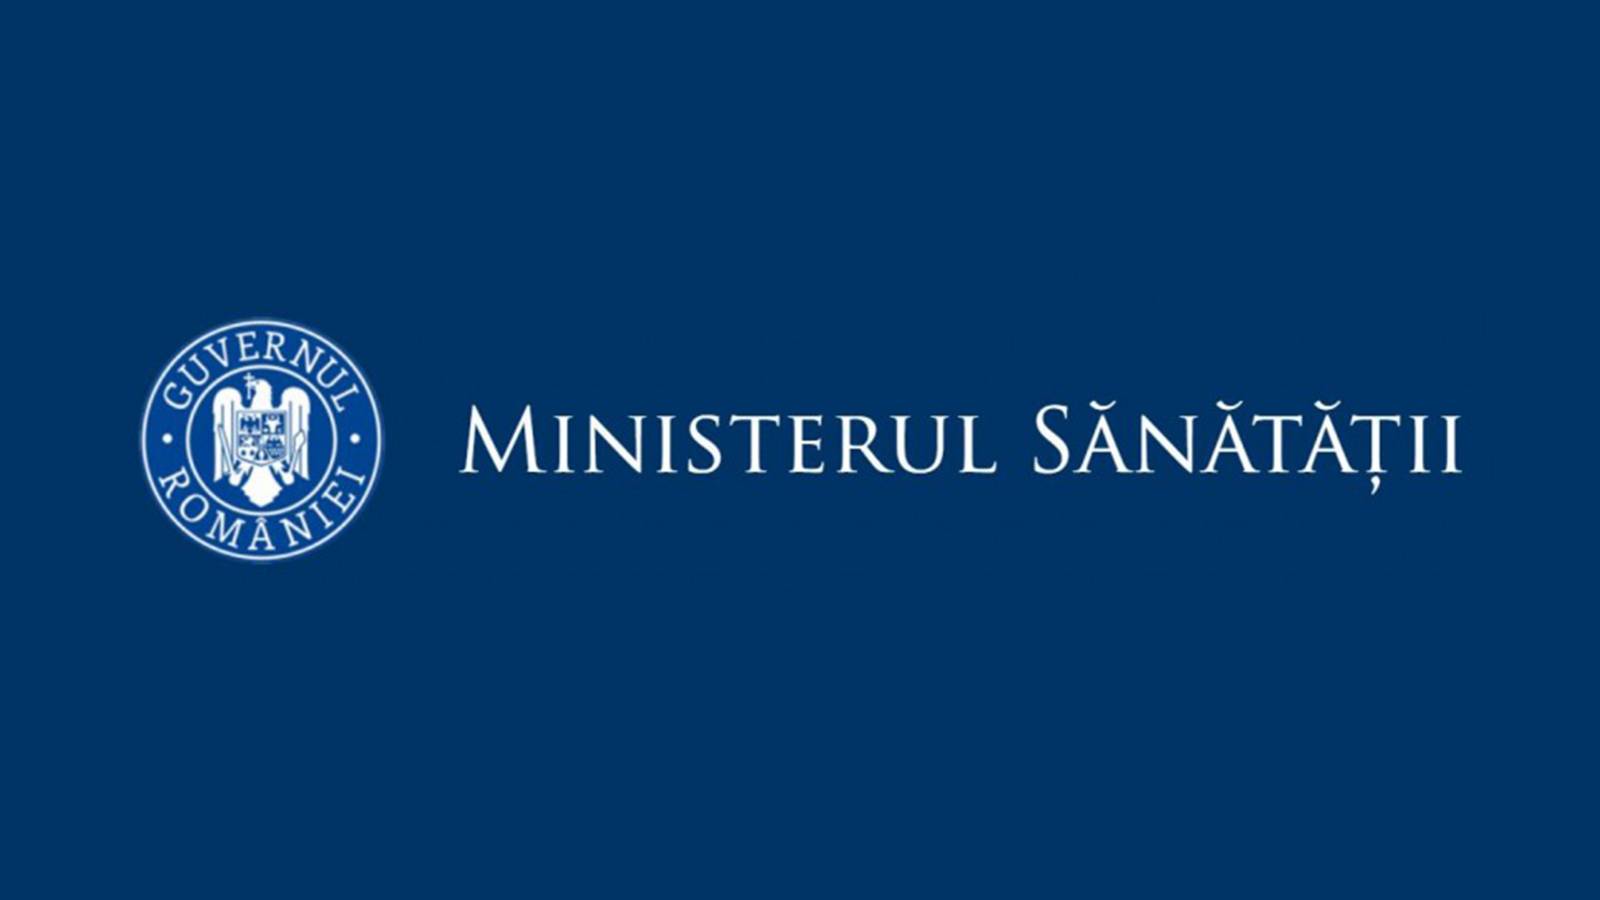 Sundhedsministeriets incidensrater Rumænien 21. maj 2021